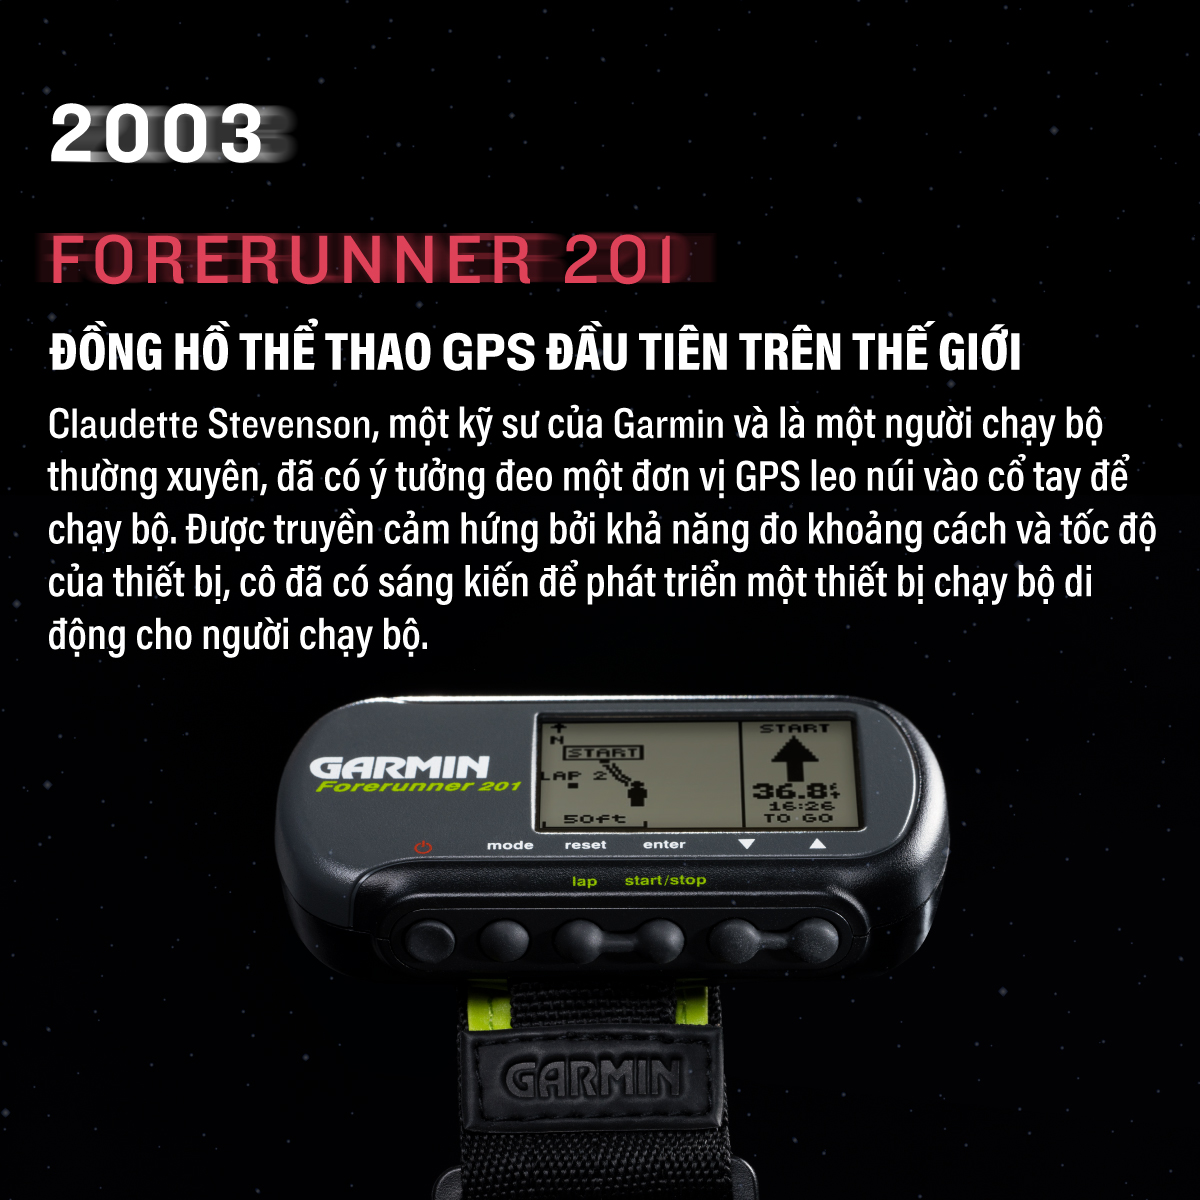 Garmin Forerunner, đồng hồ GPS đầu tiên trên thế giới đã ra đời 20 năm - FR history FB VN 4